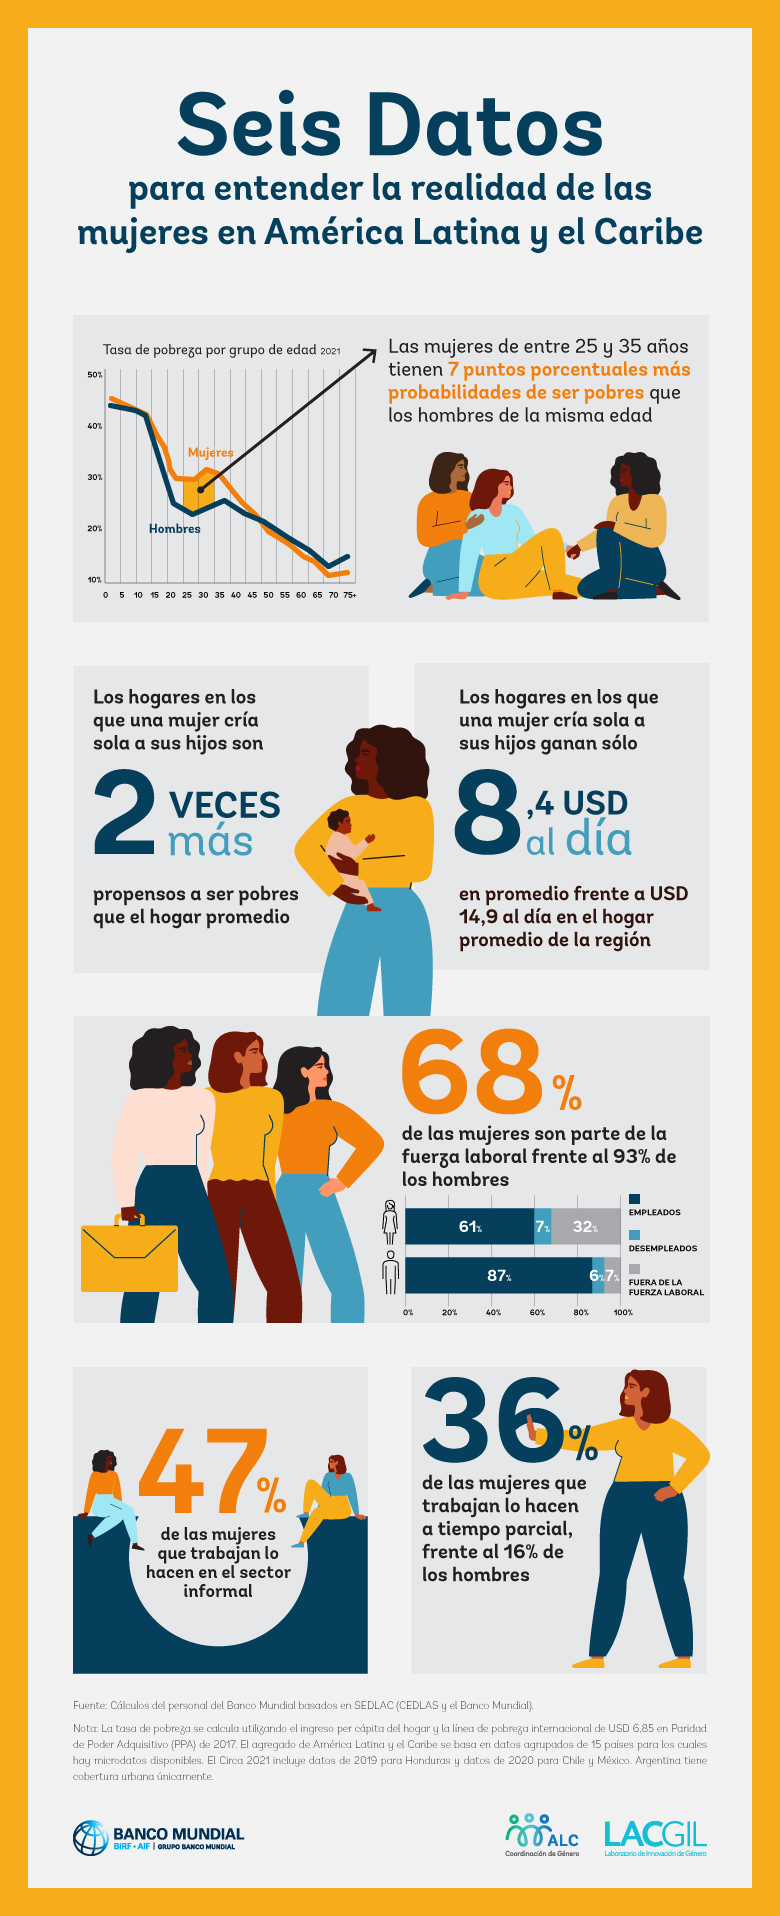 Seis datos para entender la realidad de las mujeres de América Latina y el Caribe